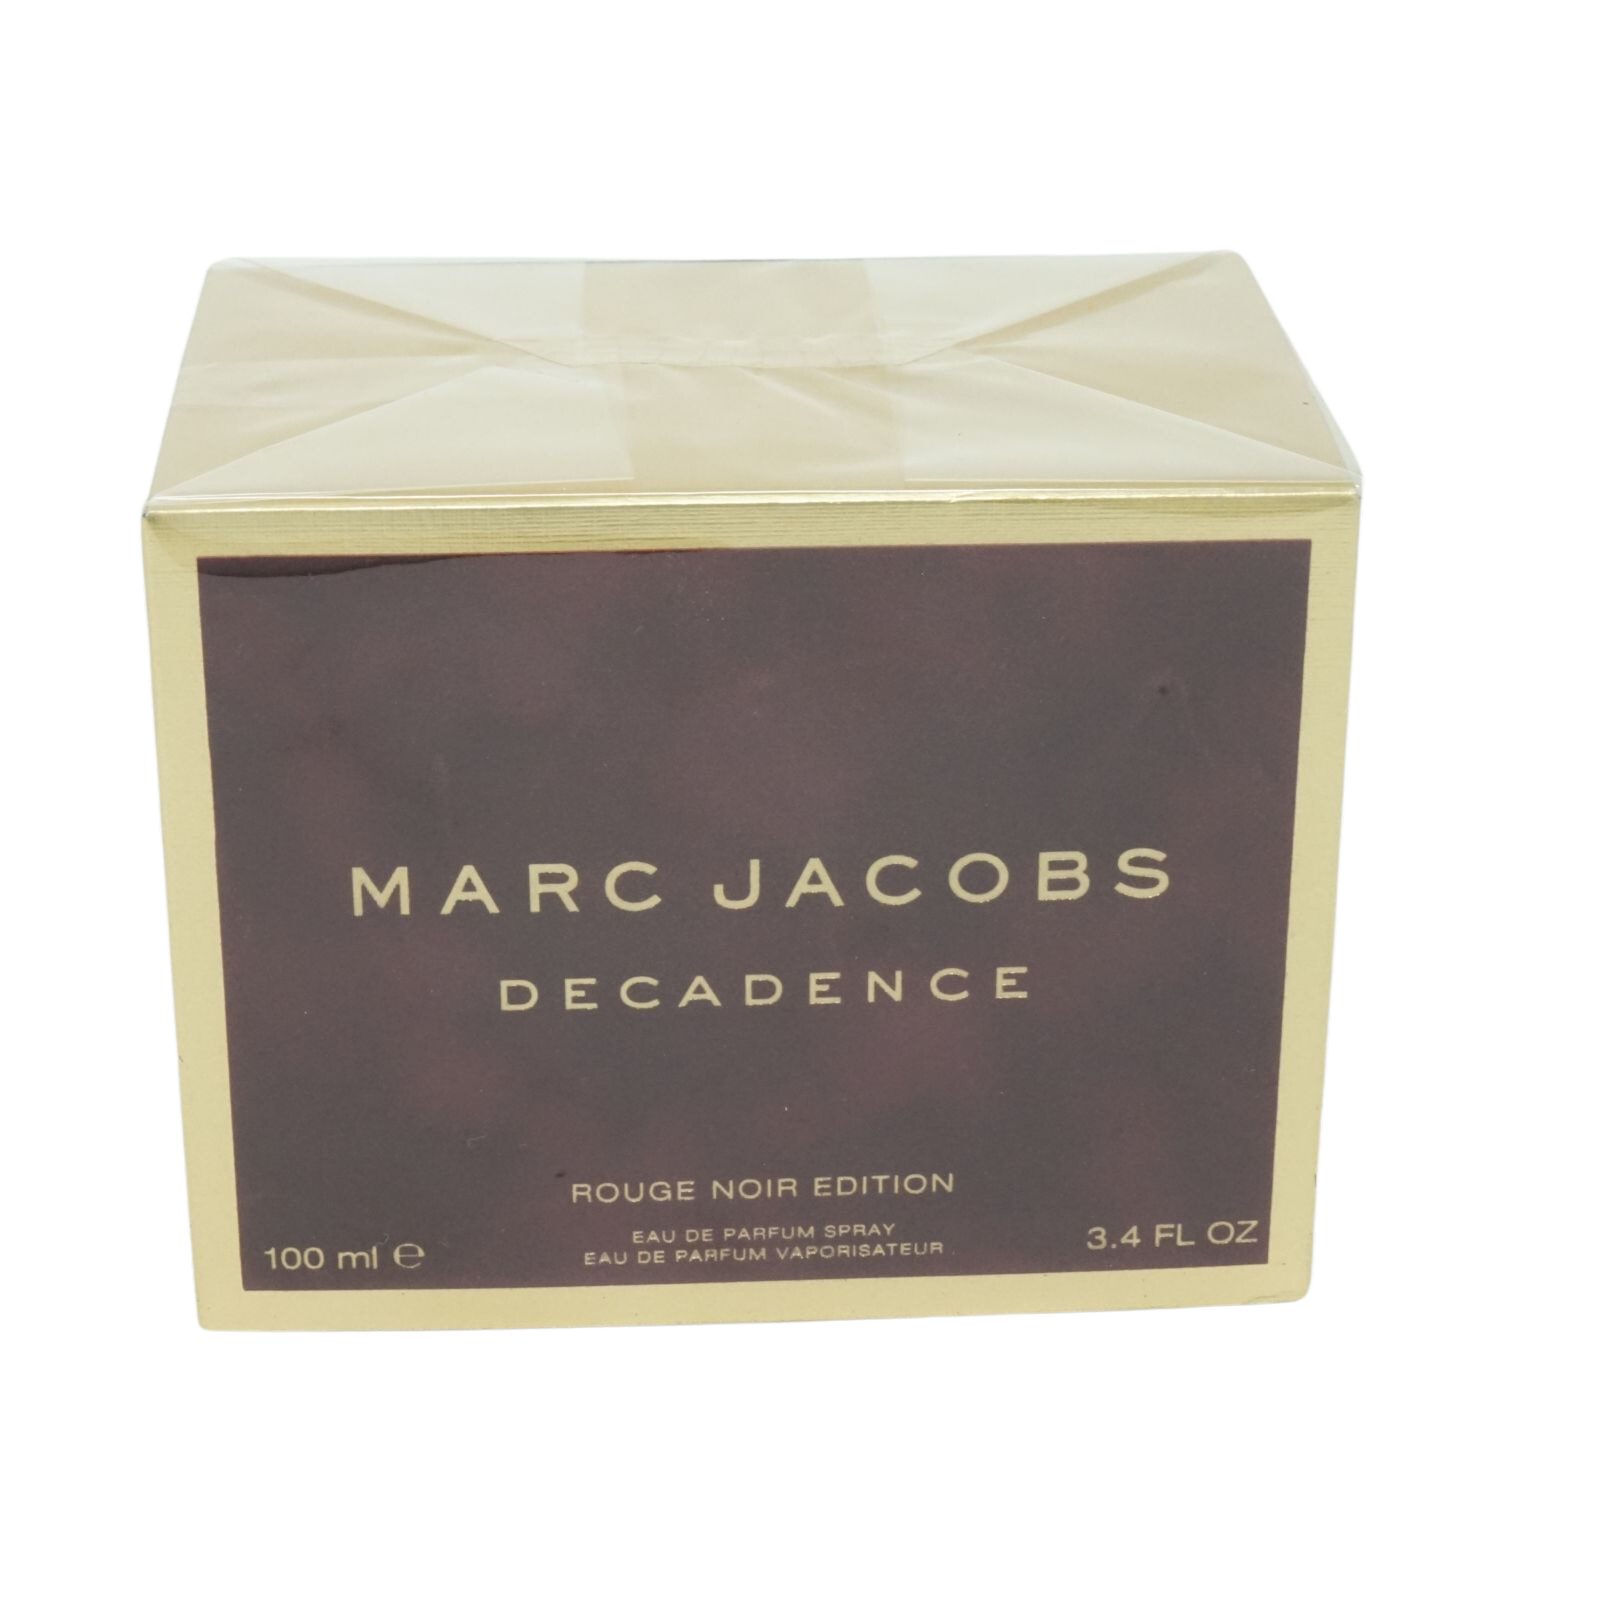 MARC JACOBS Eau de Parfum Marc Jacobs Decadence Rouge Noir Edition Eau de Parfum Spray 100ml